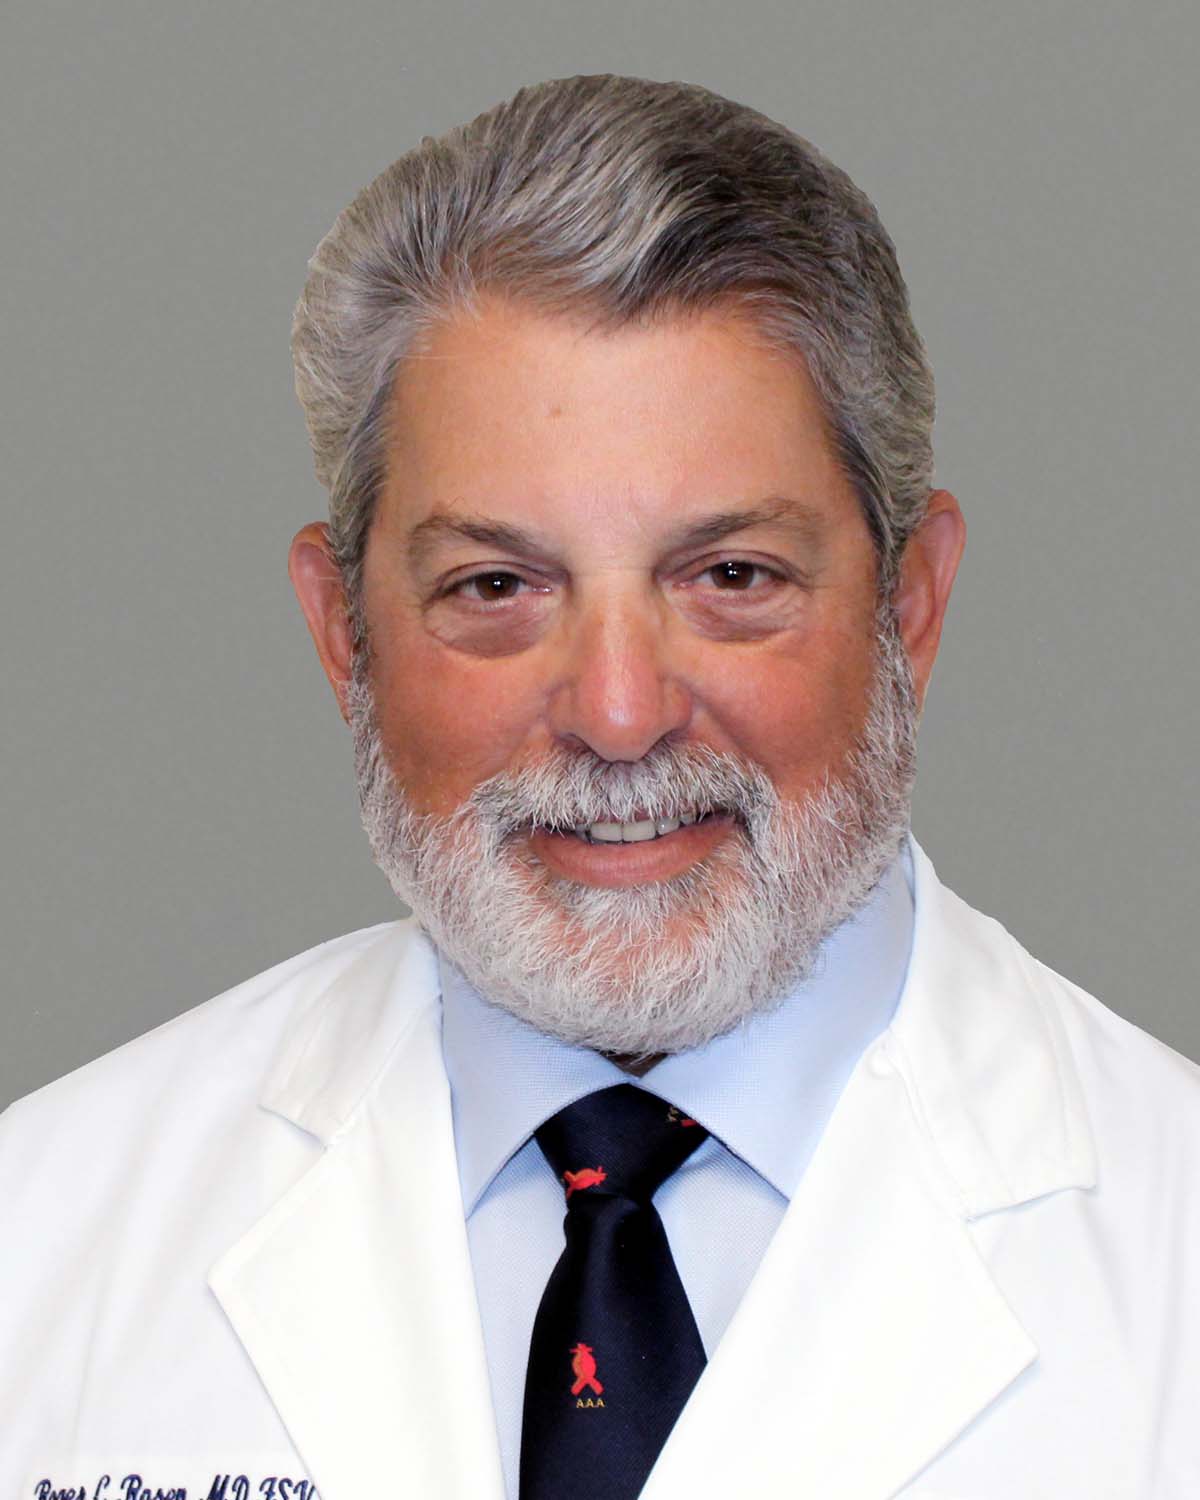 Roger C. Rosen, MD, FSVS, FACS